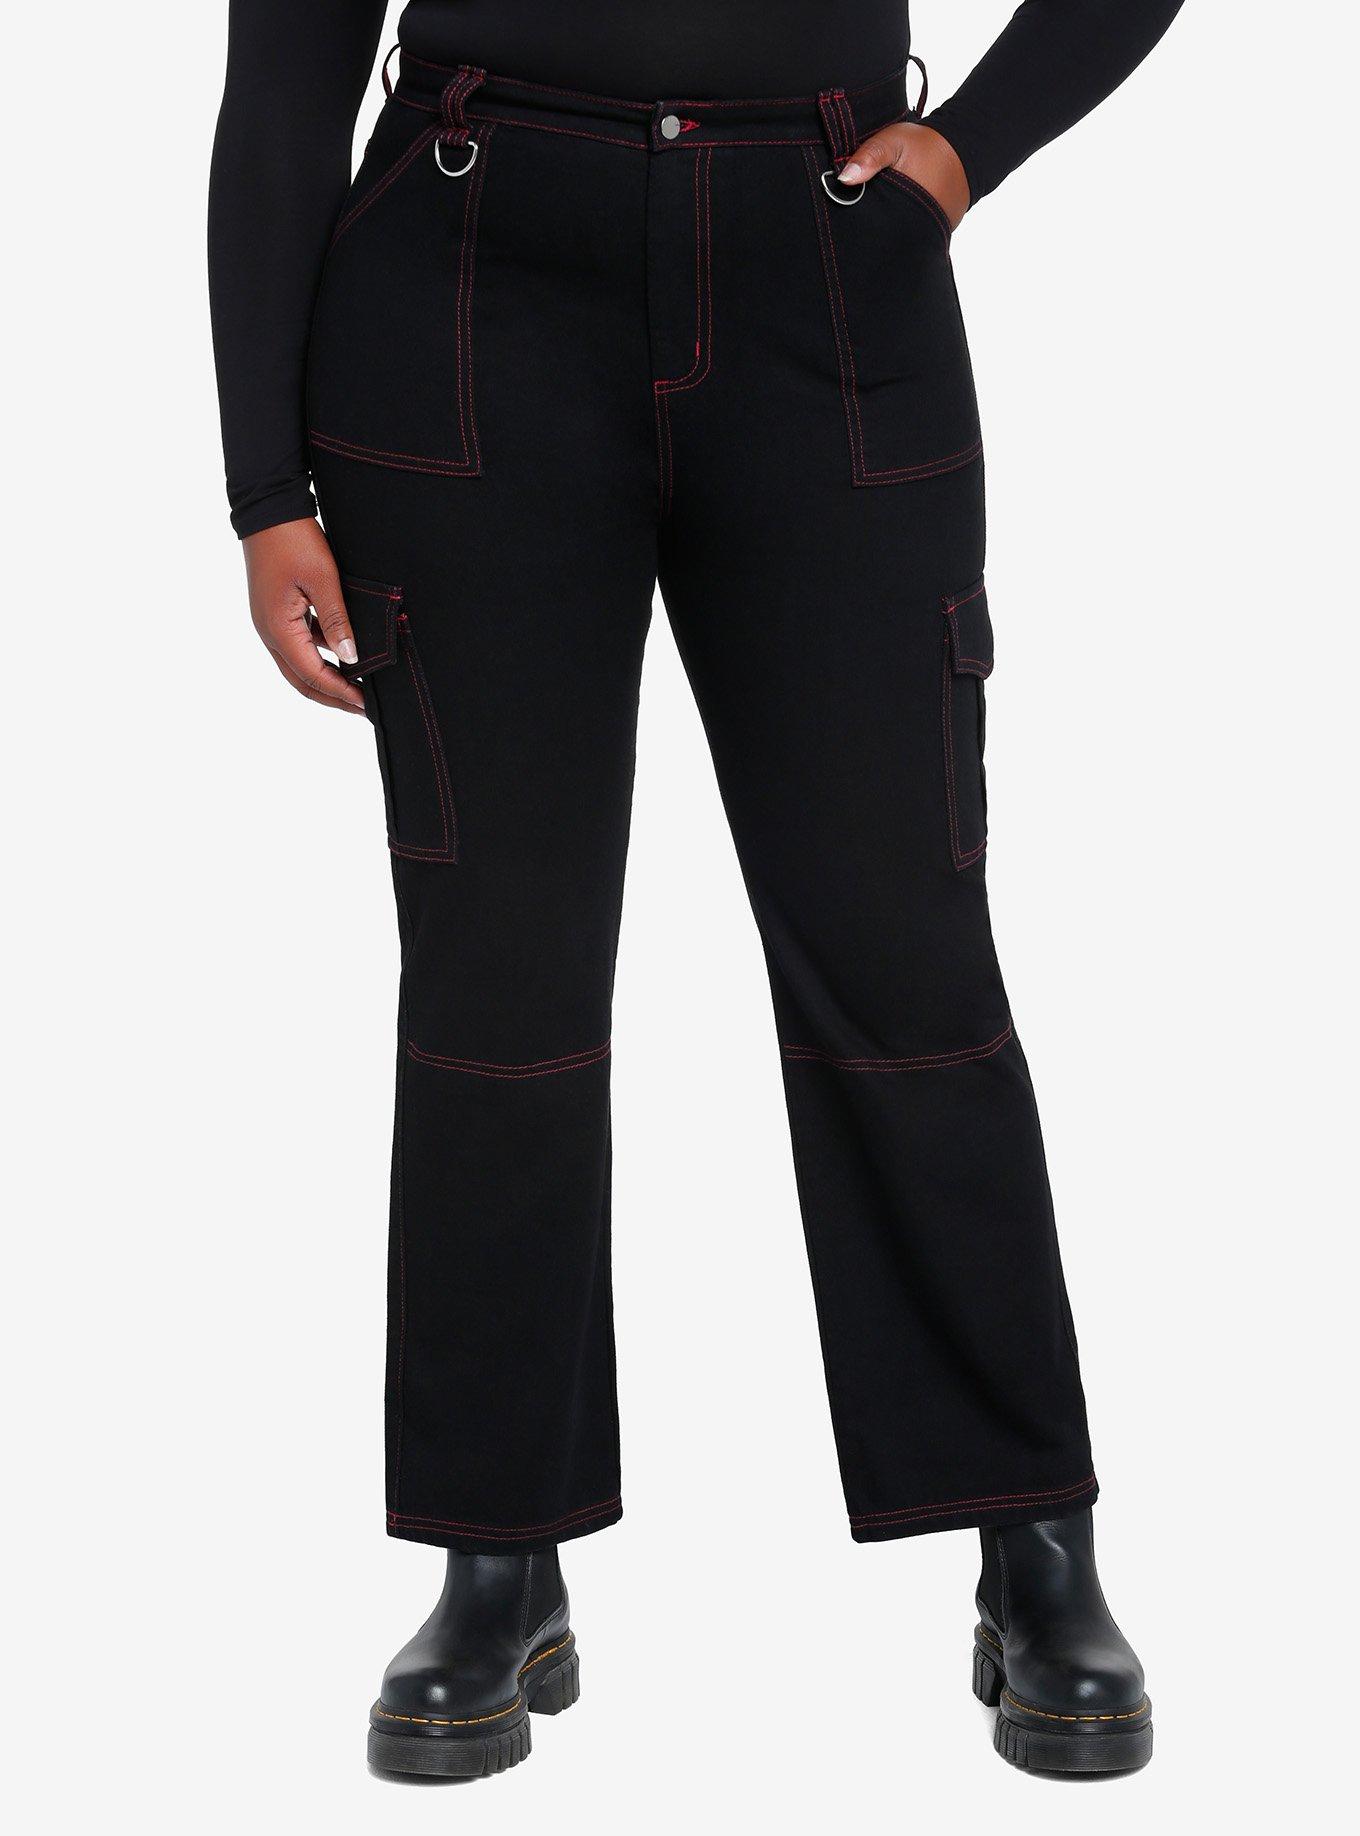 Black & Pink Contrast Stitch Carpenter Pants Plus Size